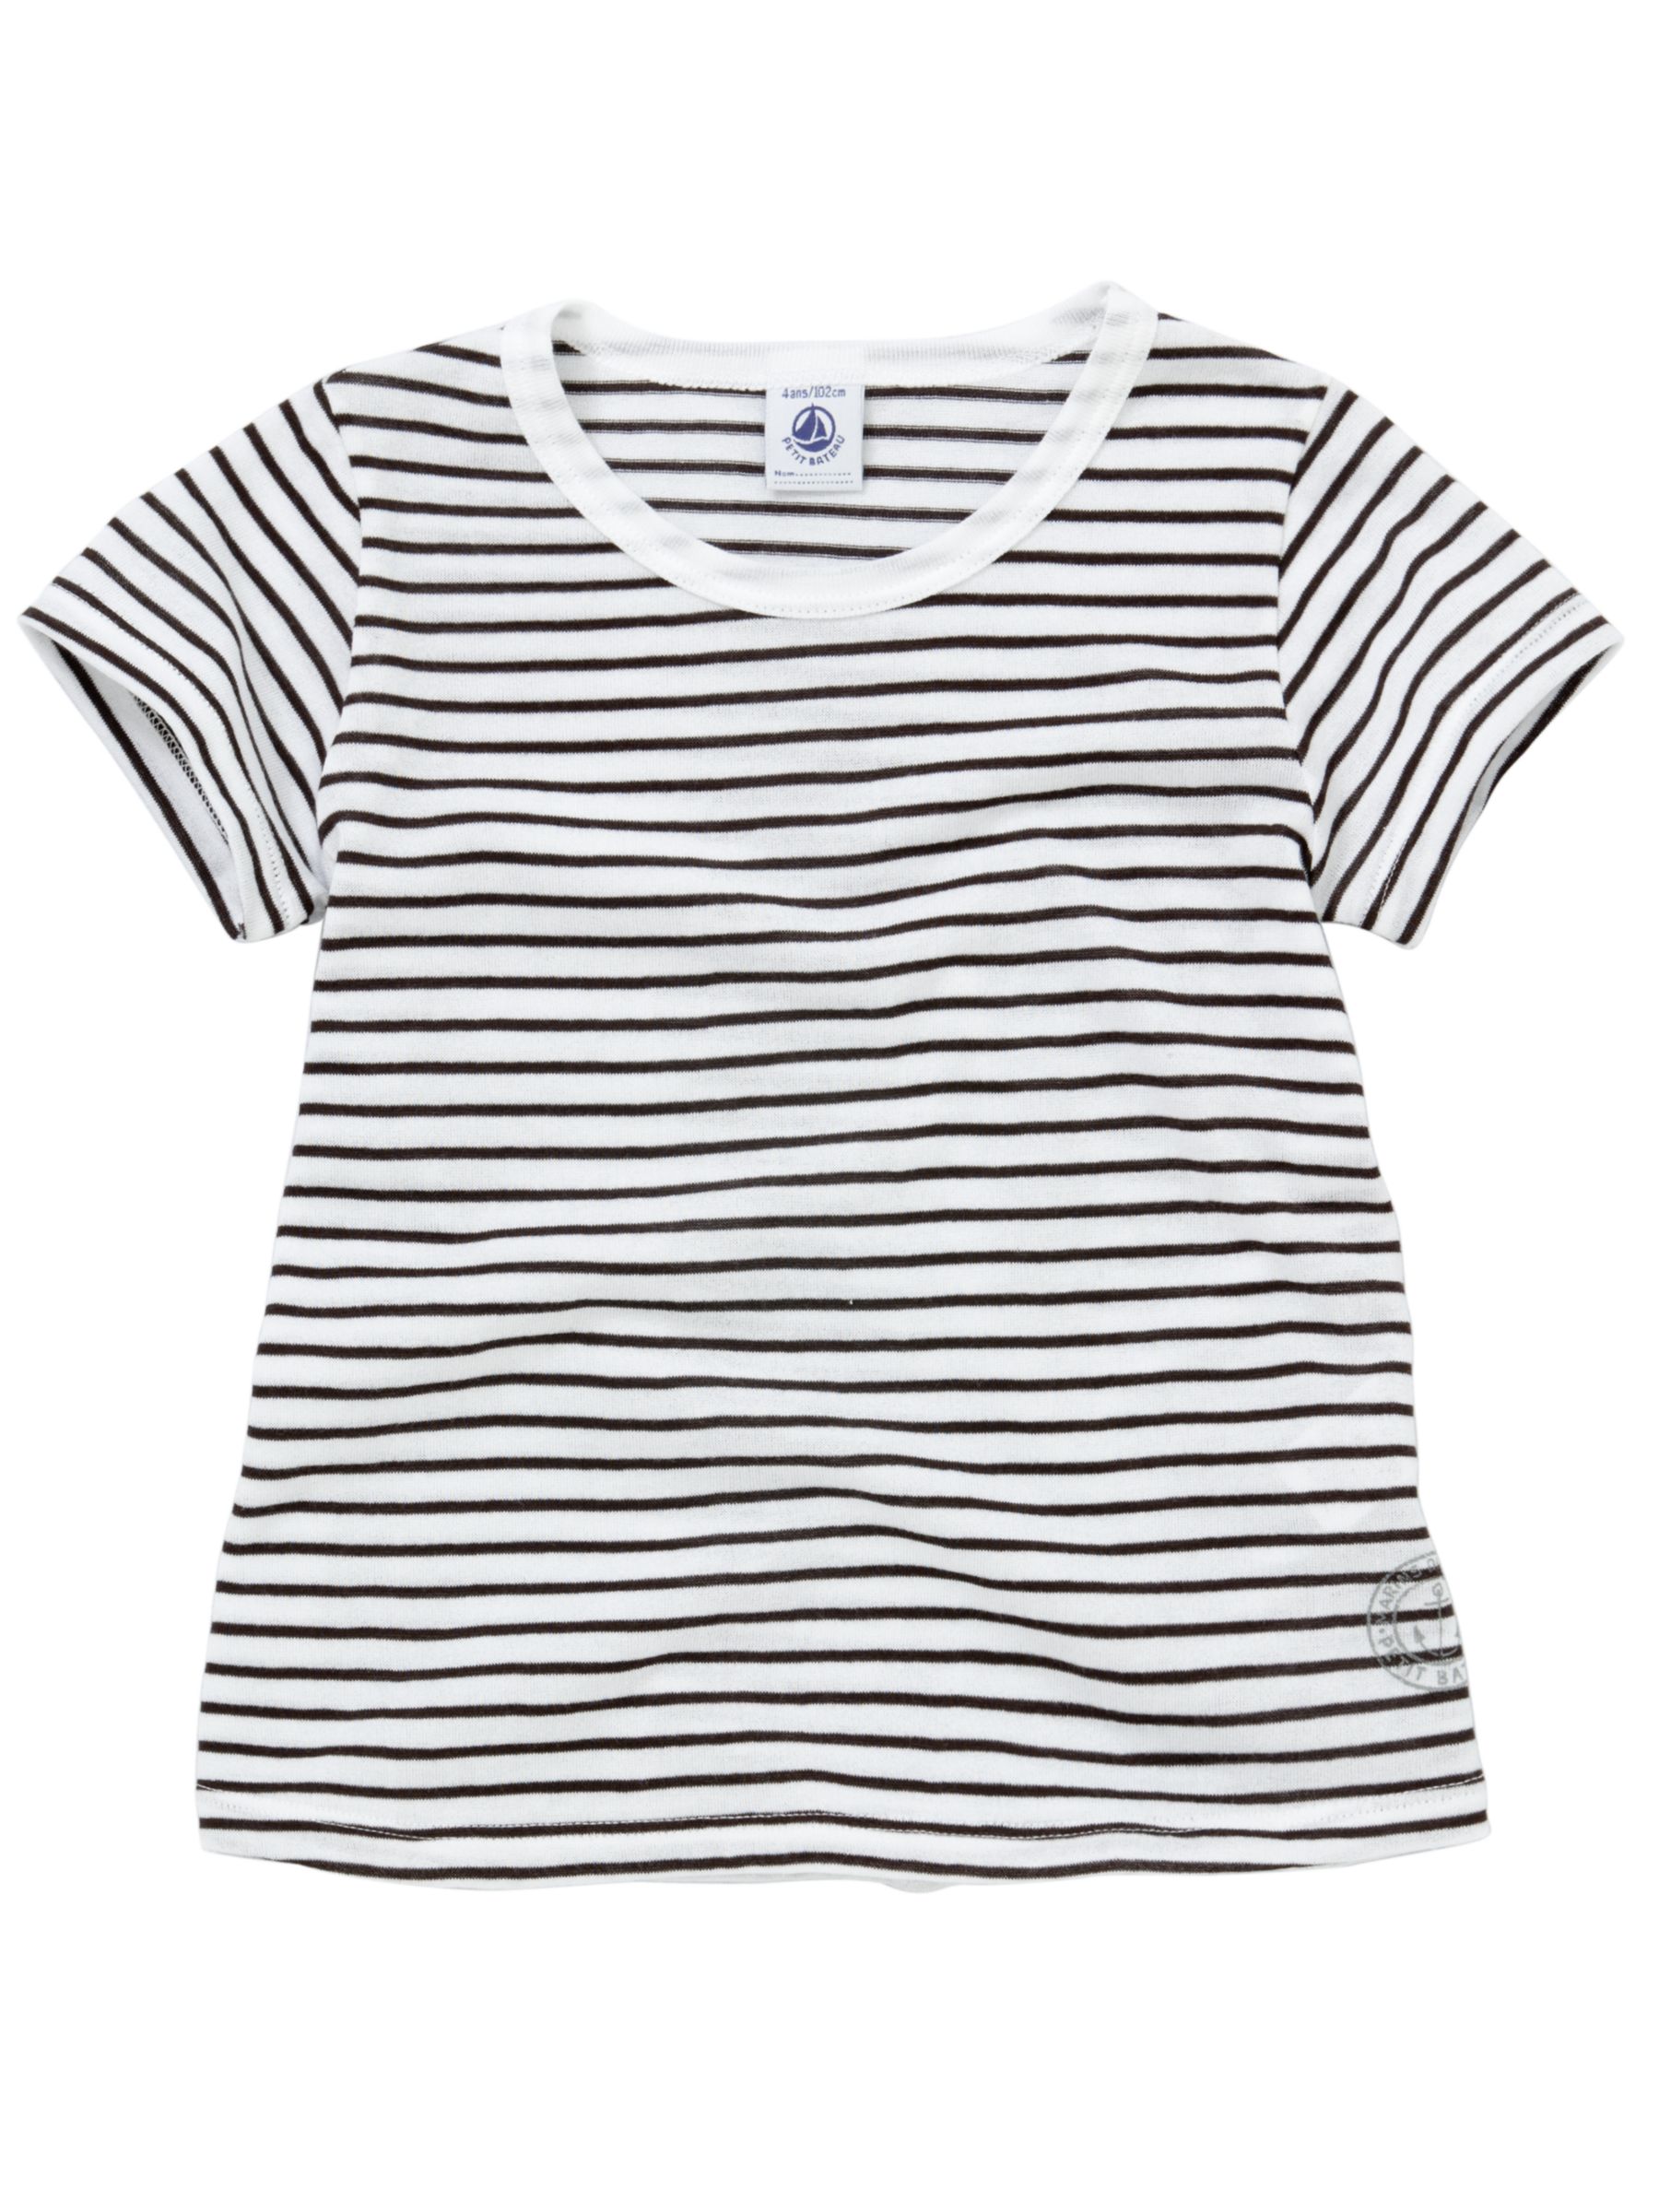 Stripe Print Short Sleeve T-Shirt,